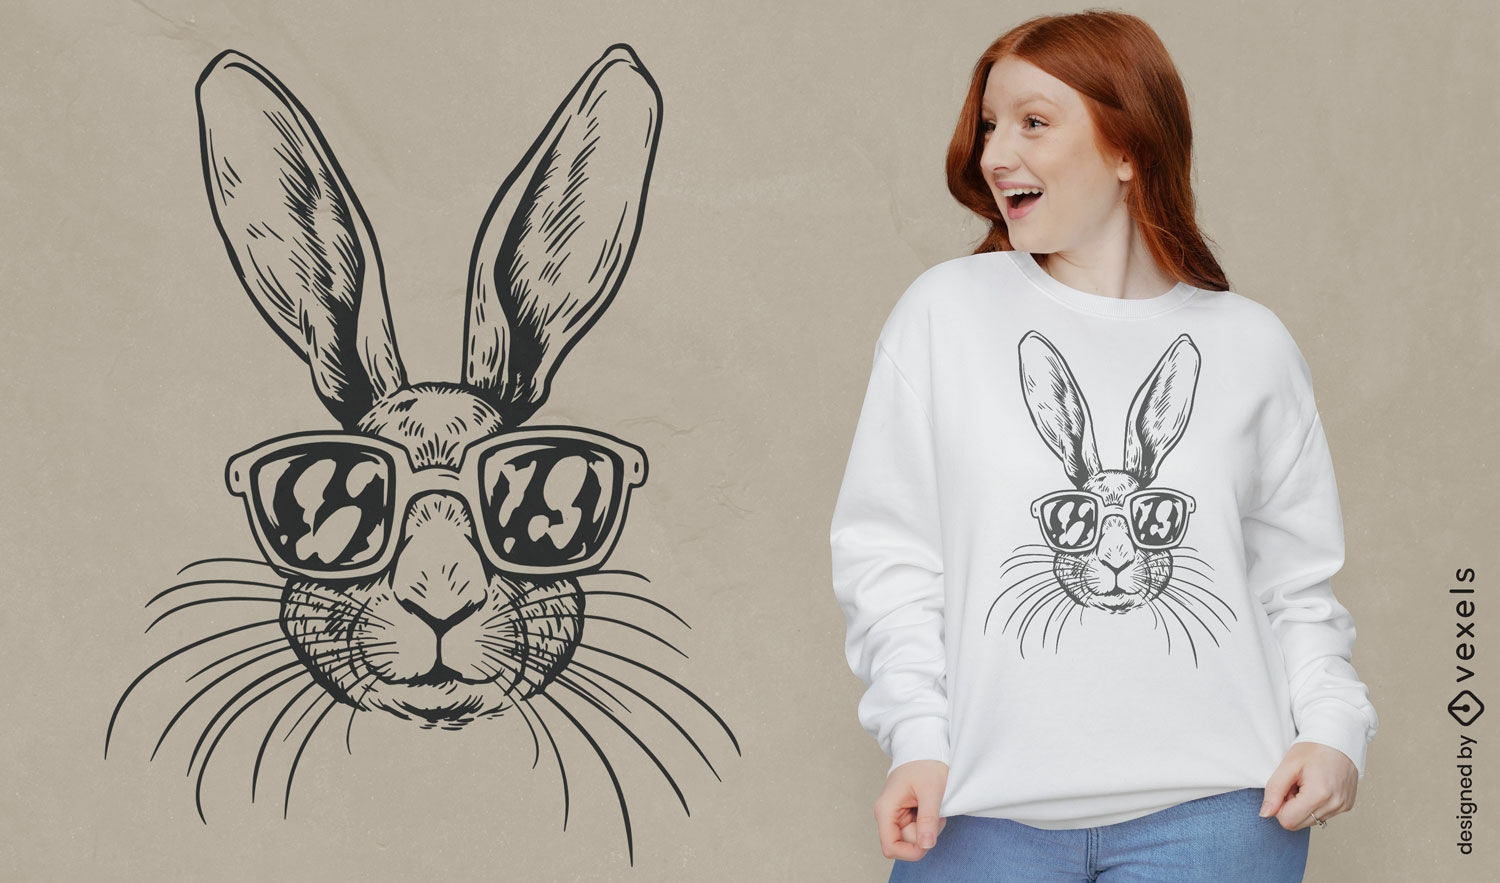 Diseño de camiseta de conejito hipster con gafas de sol.